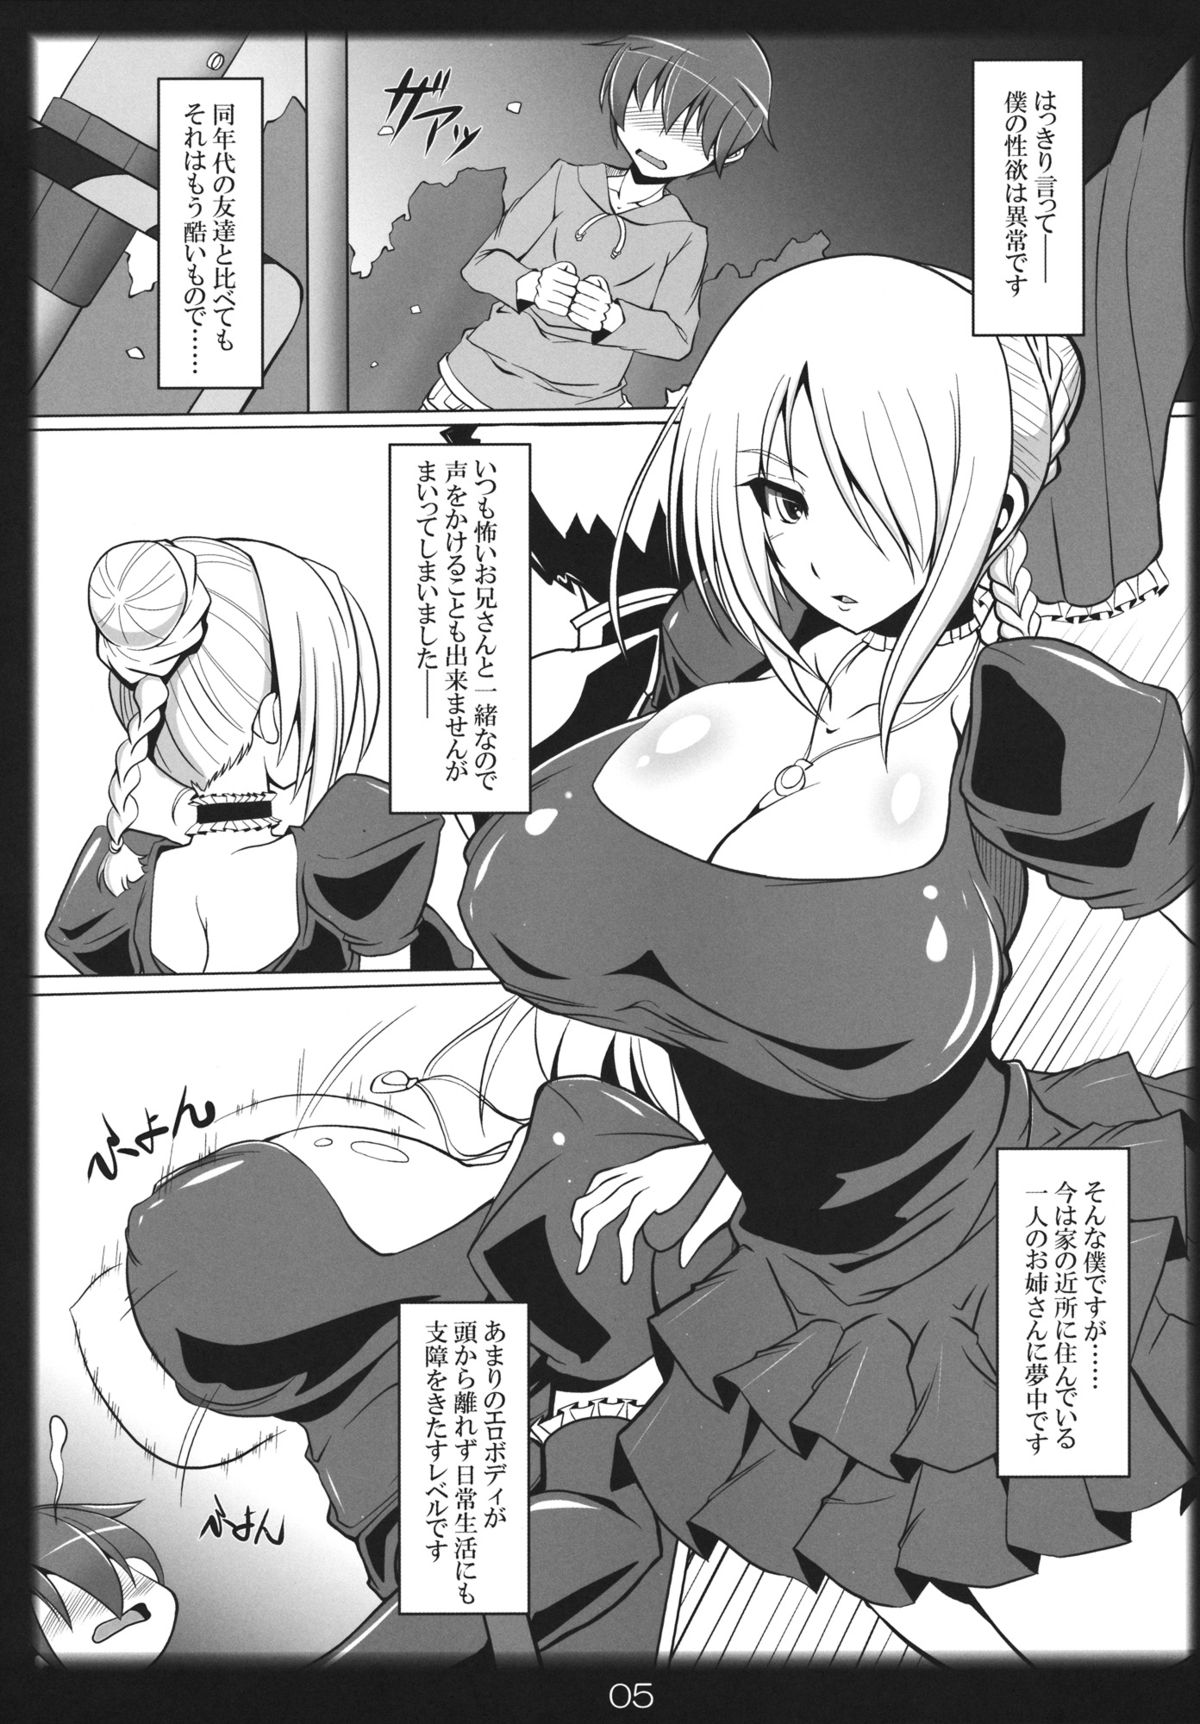 1200px x 1724px - Yobaretemasuyo, Hilda-san. - Page 4 - HentaiEra